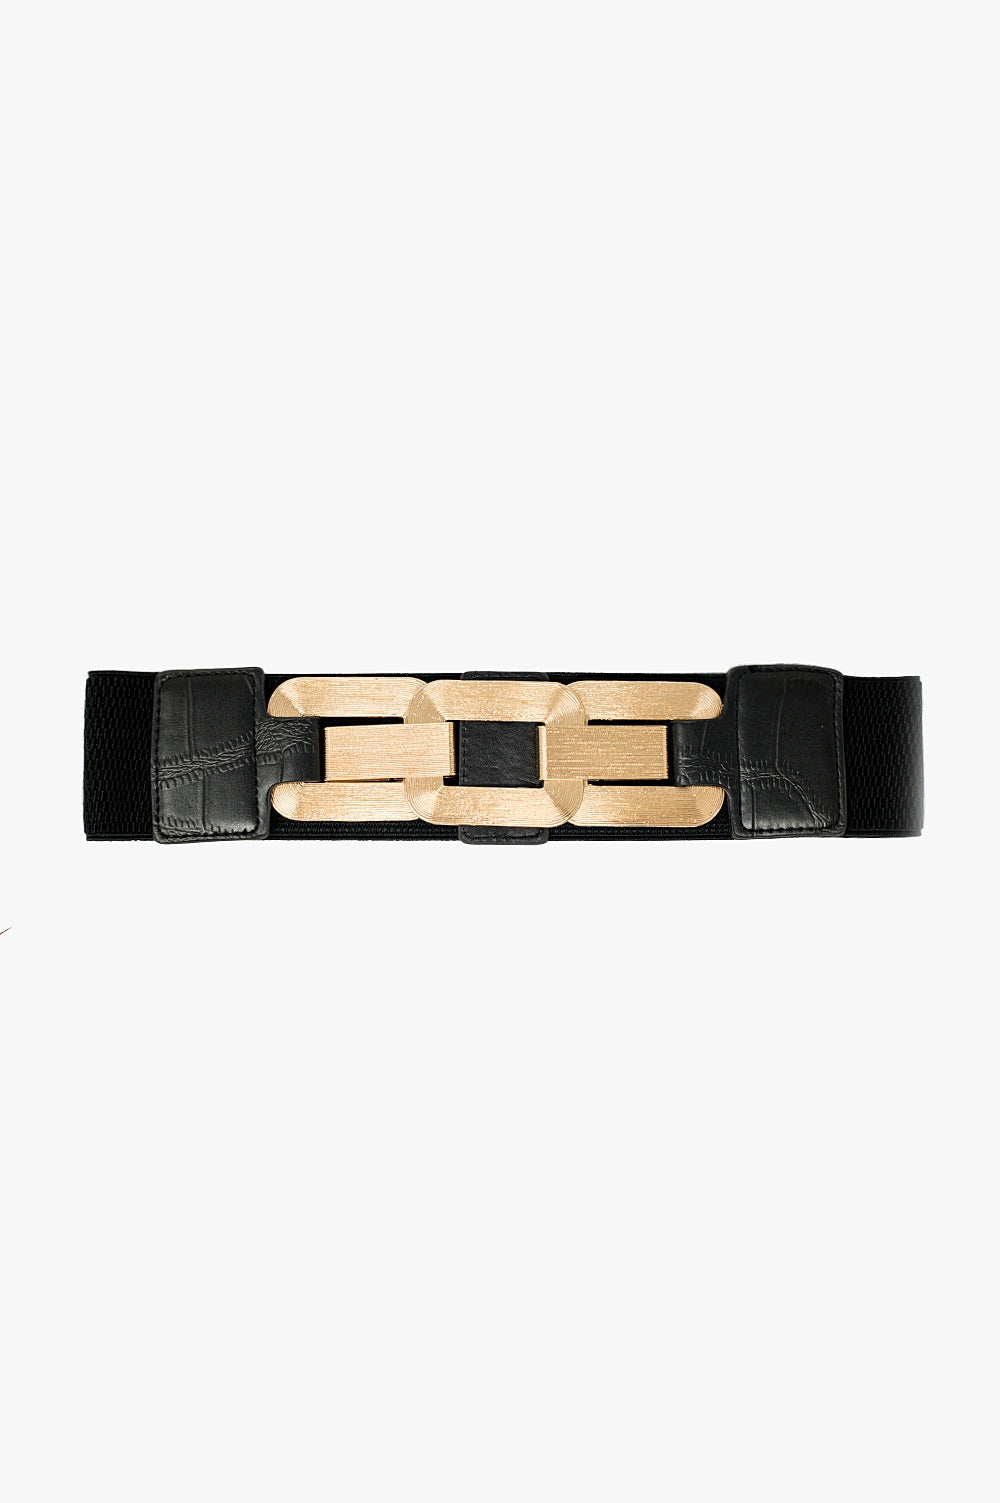 Q2 black elastic belt with triple metal buckle